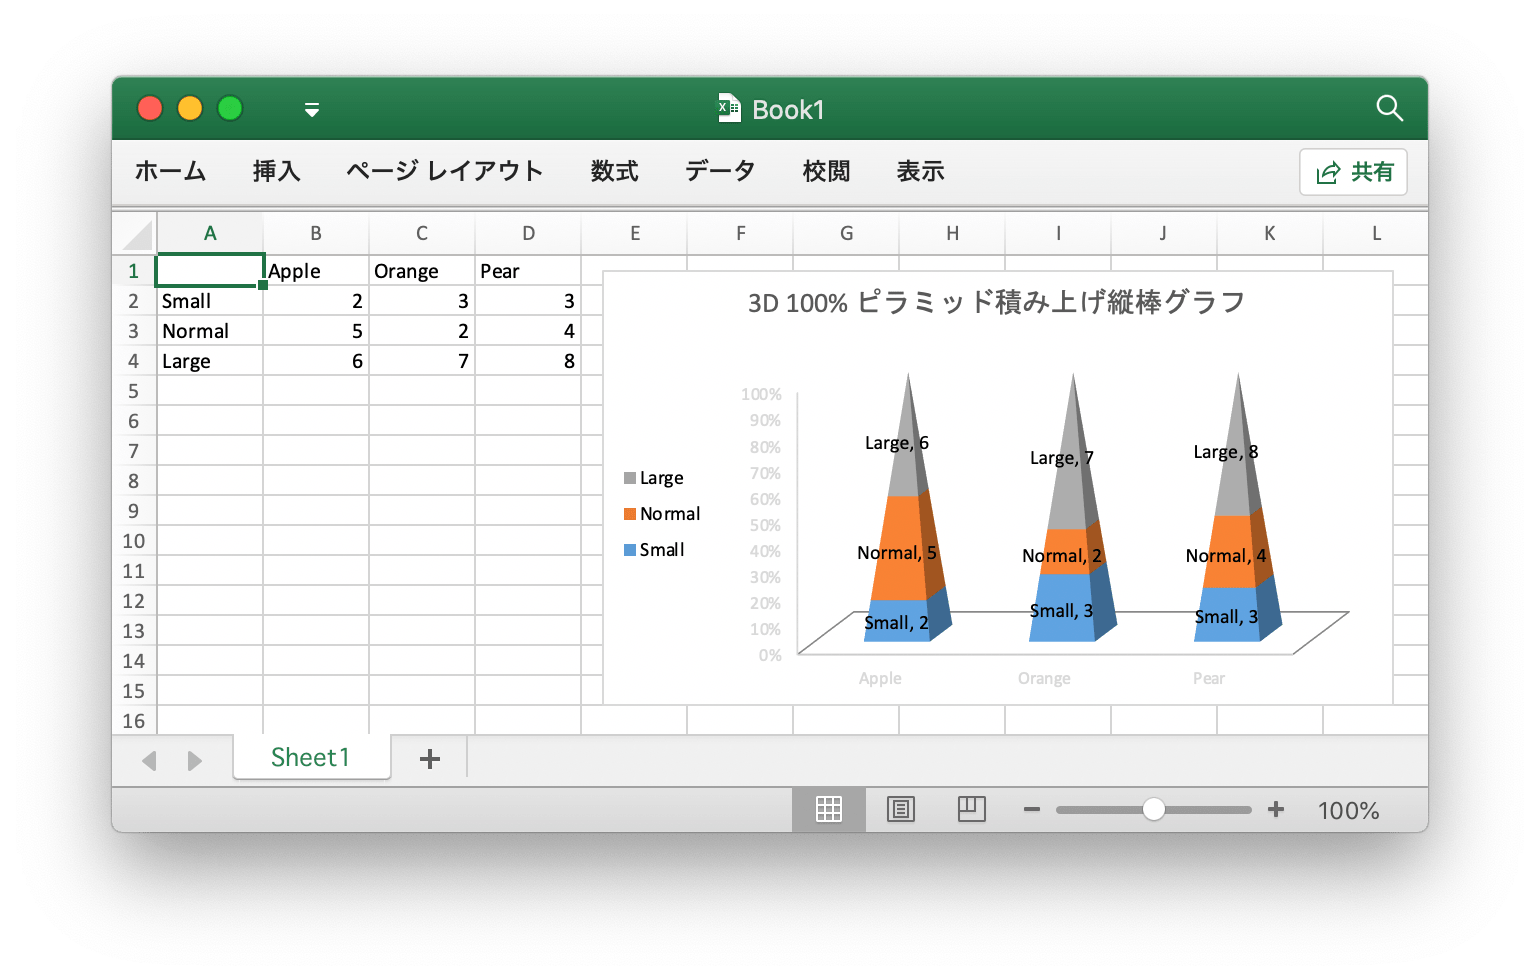 Go 言語を使用して Excel ドキュメントで 3D 100% ピラミッド積み上げ縦棒グラフ 作成する